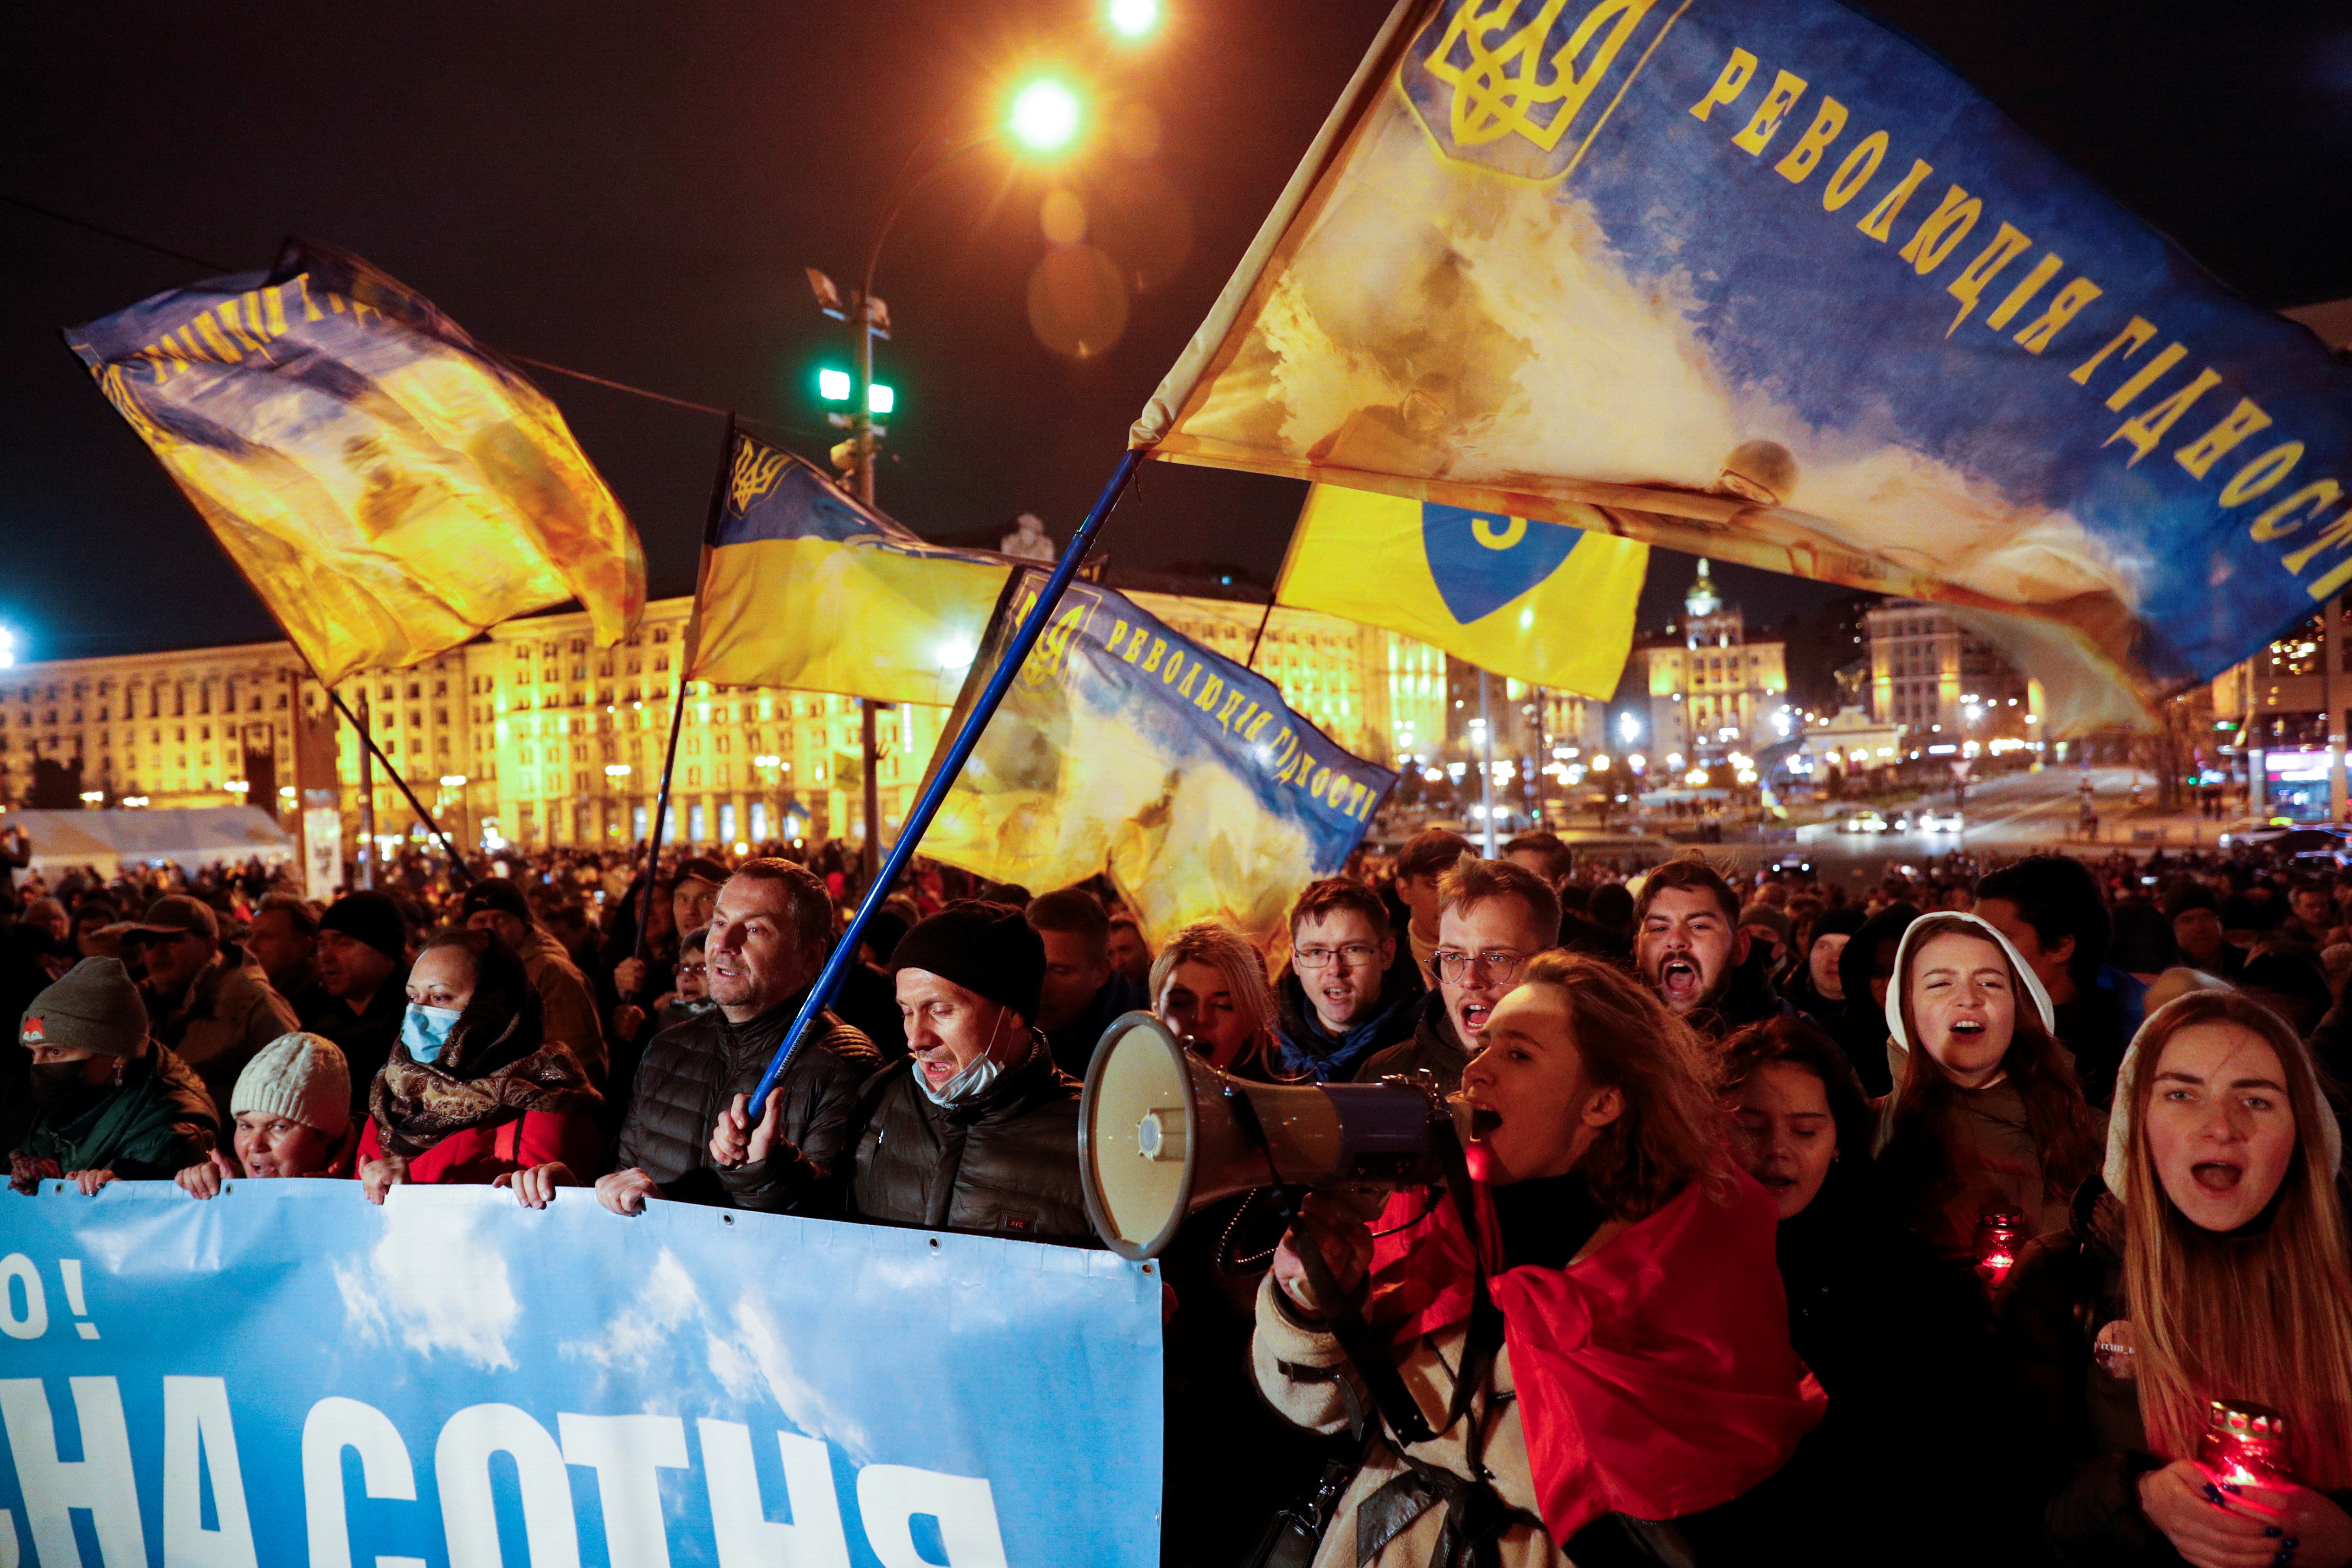 Una marcha en el centro de Kiev el 21 de noviembre pasado recordó el octavo aniversario de las movilizaciones masivas pro-europeas que pusieron fin al gobierno de Viktor Yanukovich.